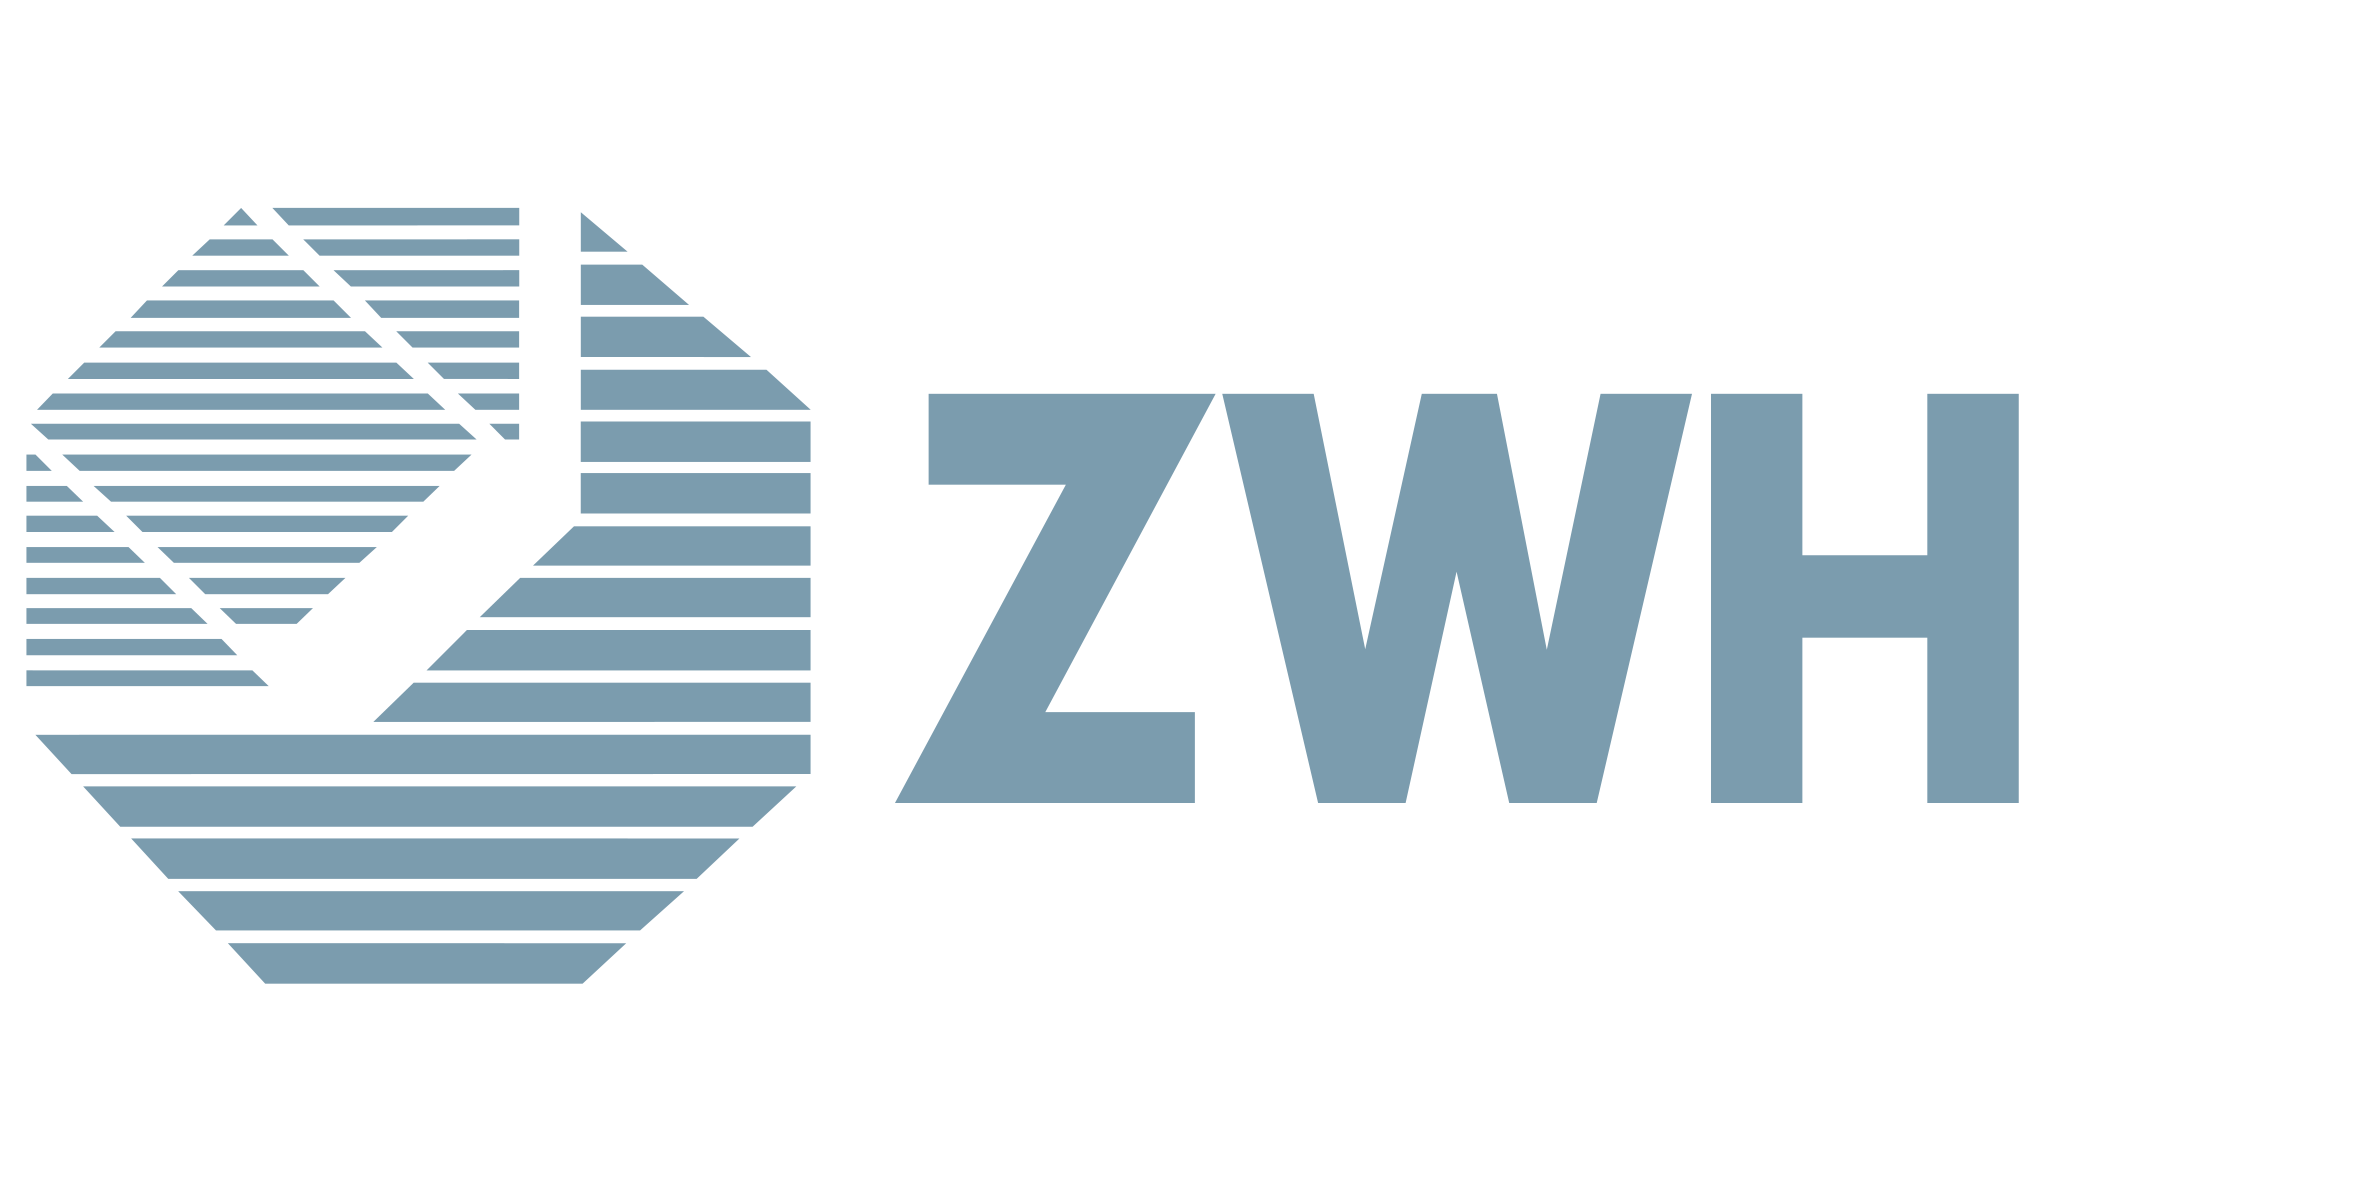 Logotipo del Zentralstelle für Weiterbildung im Handwerk e. V. - Socio del proyecto CoRiCert